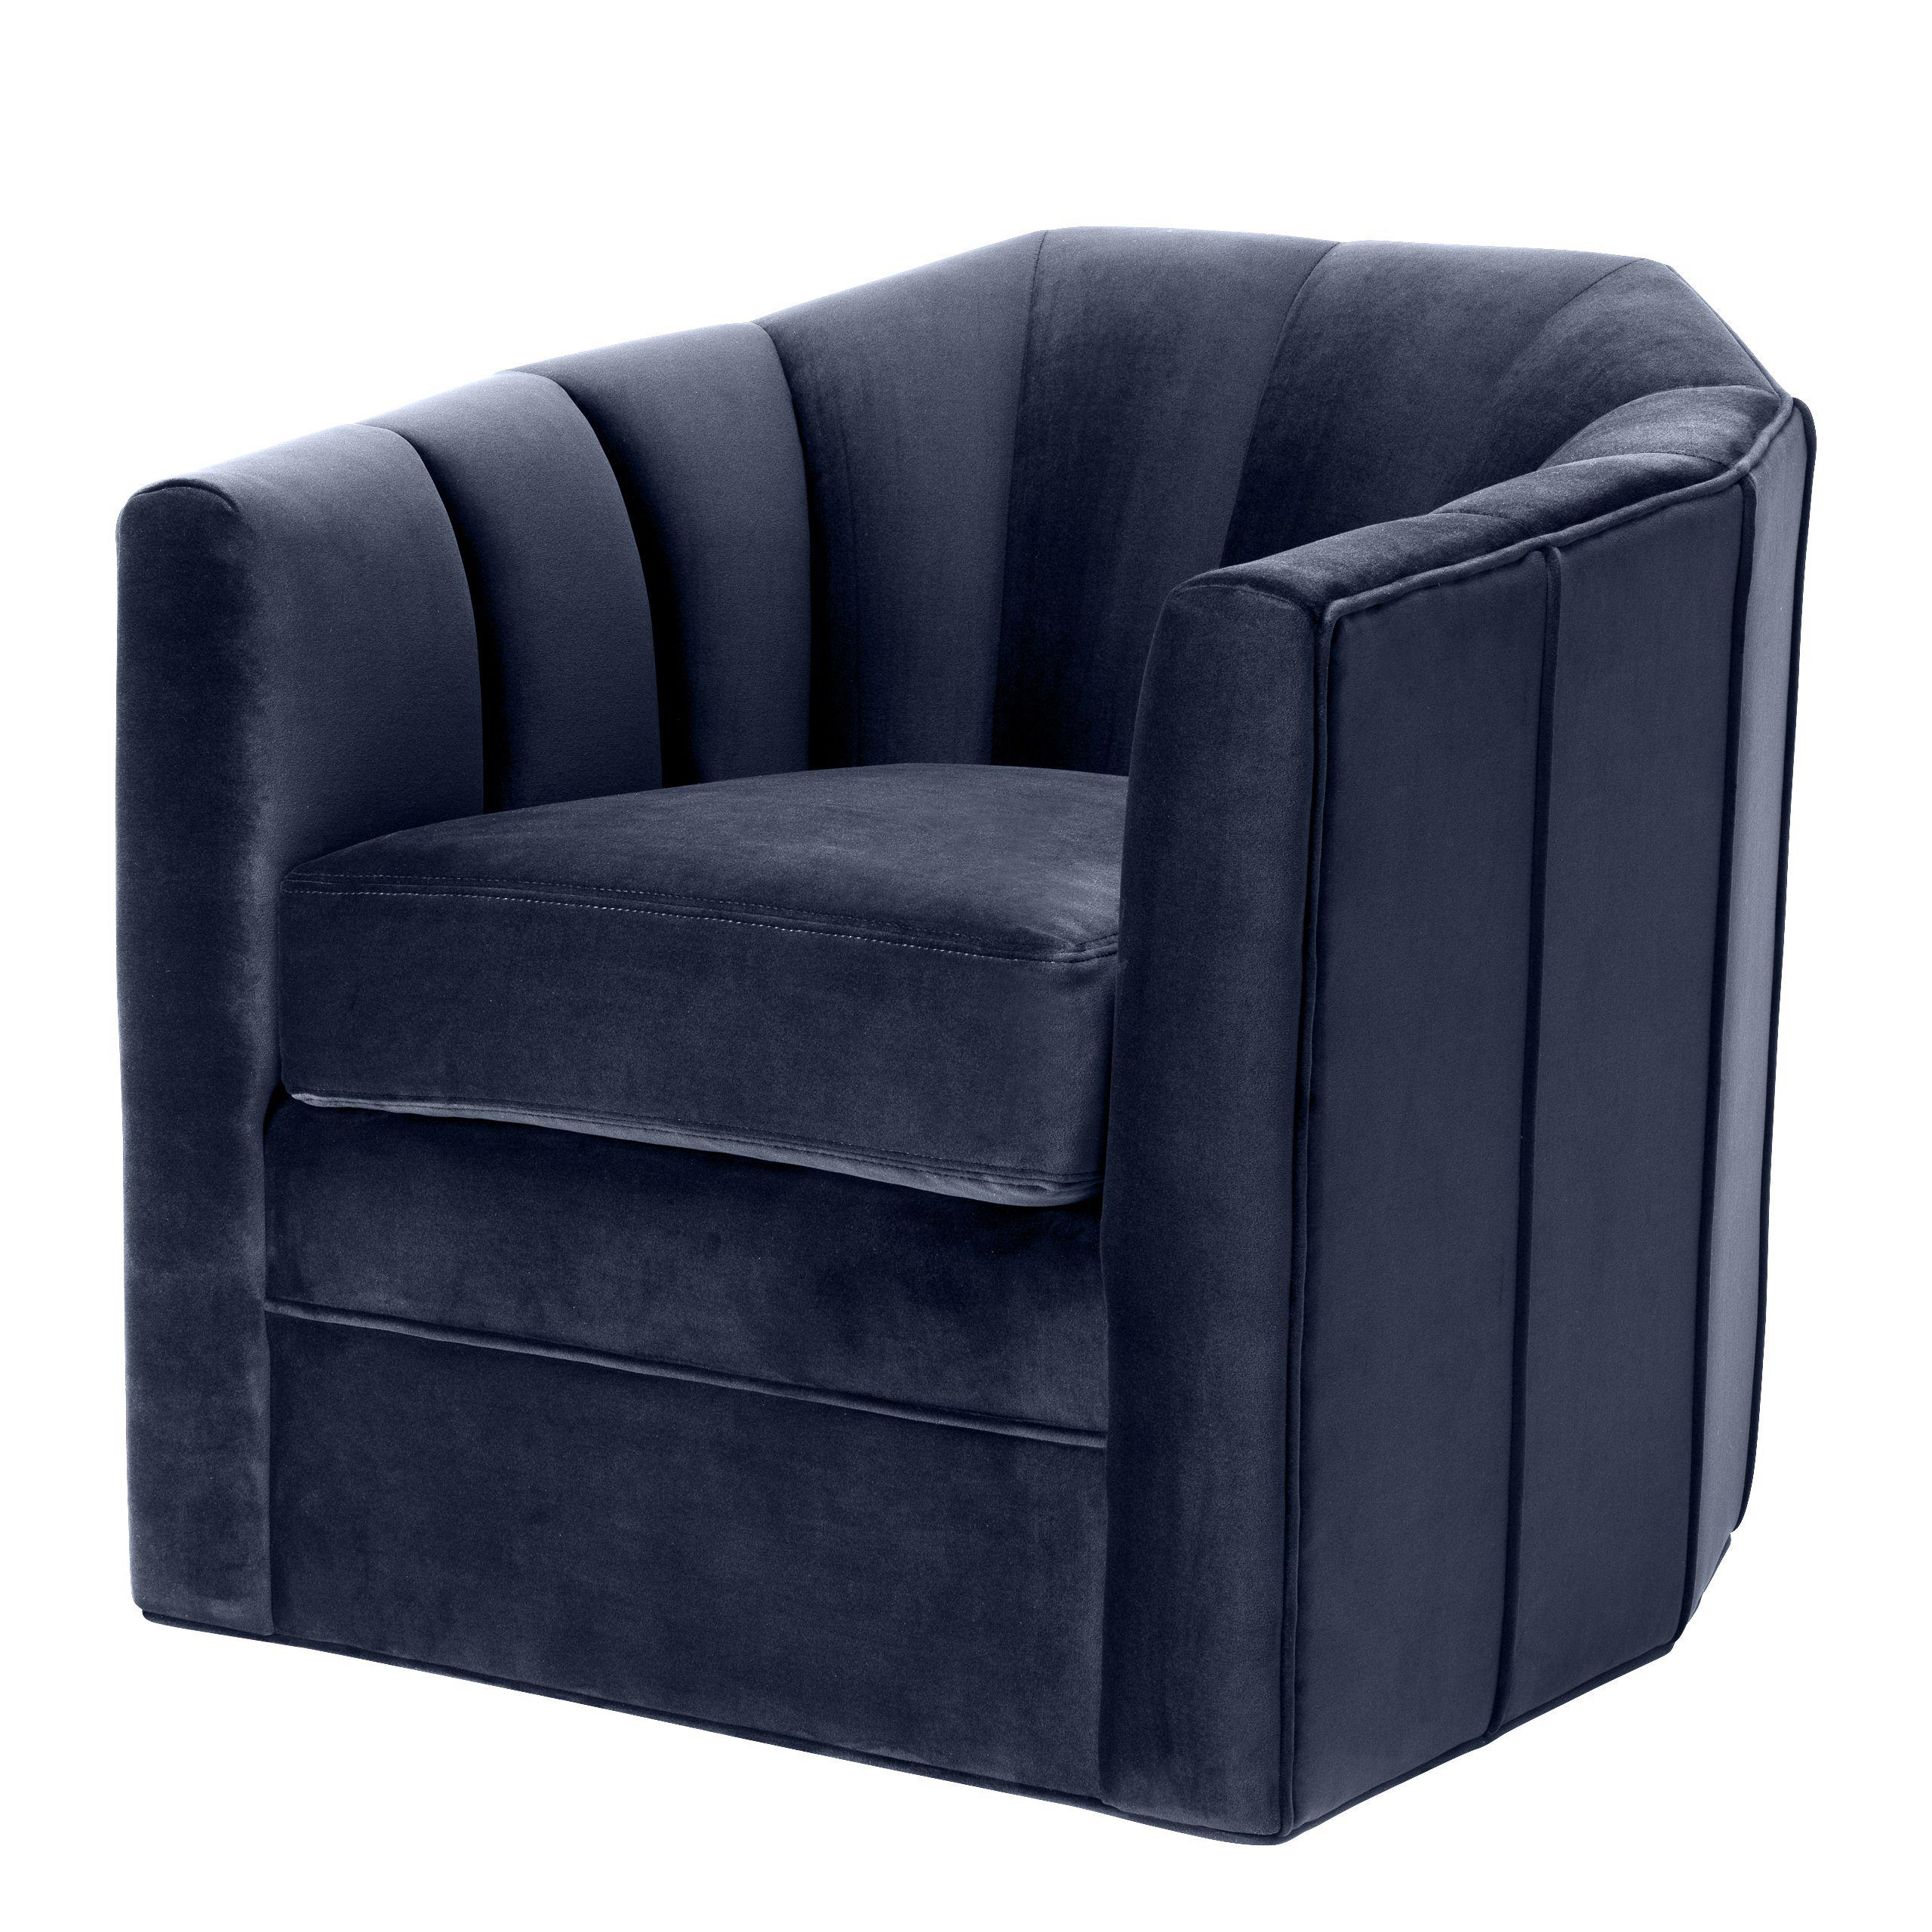 Купить Крутящееся кресло Swivel Chair Delancey в интернет-магазине roooms.ru